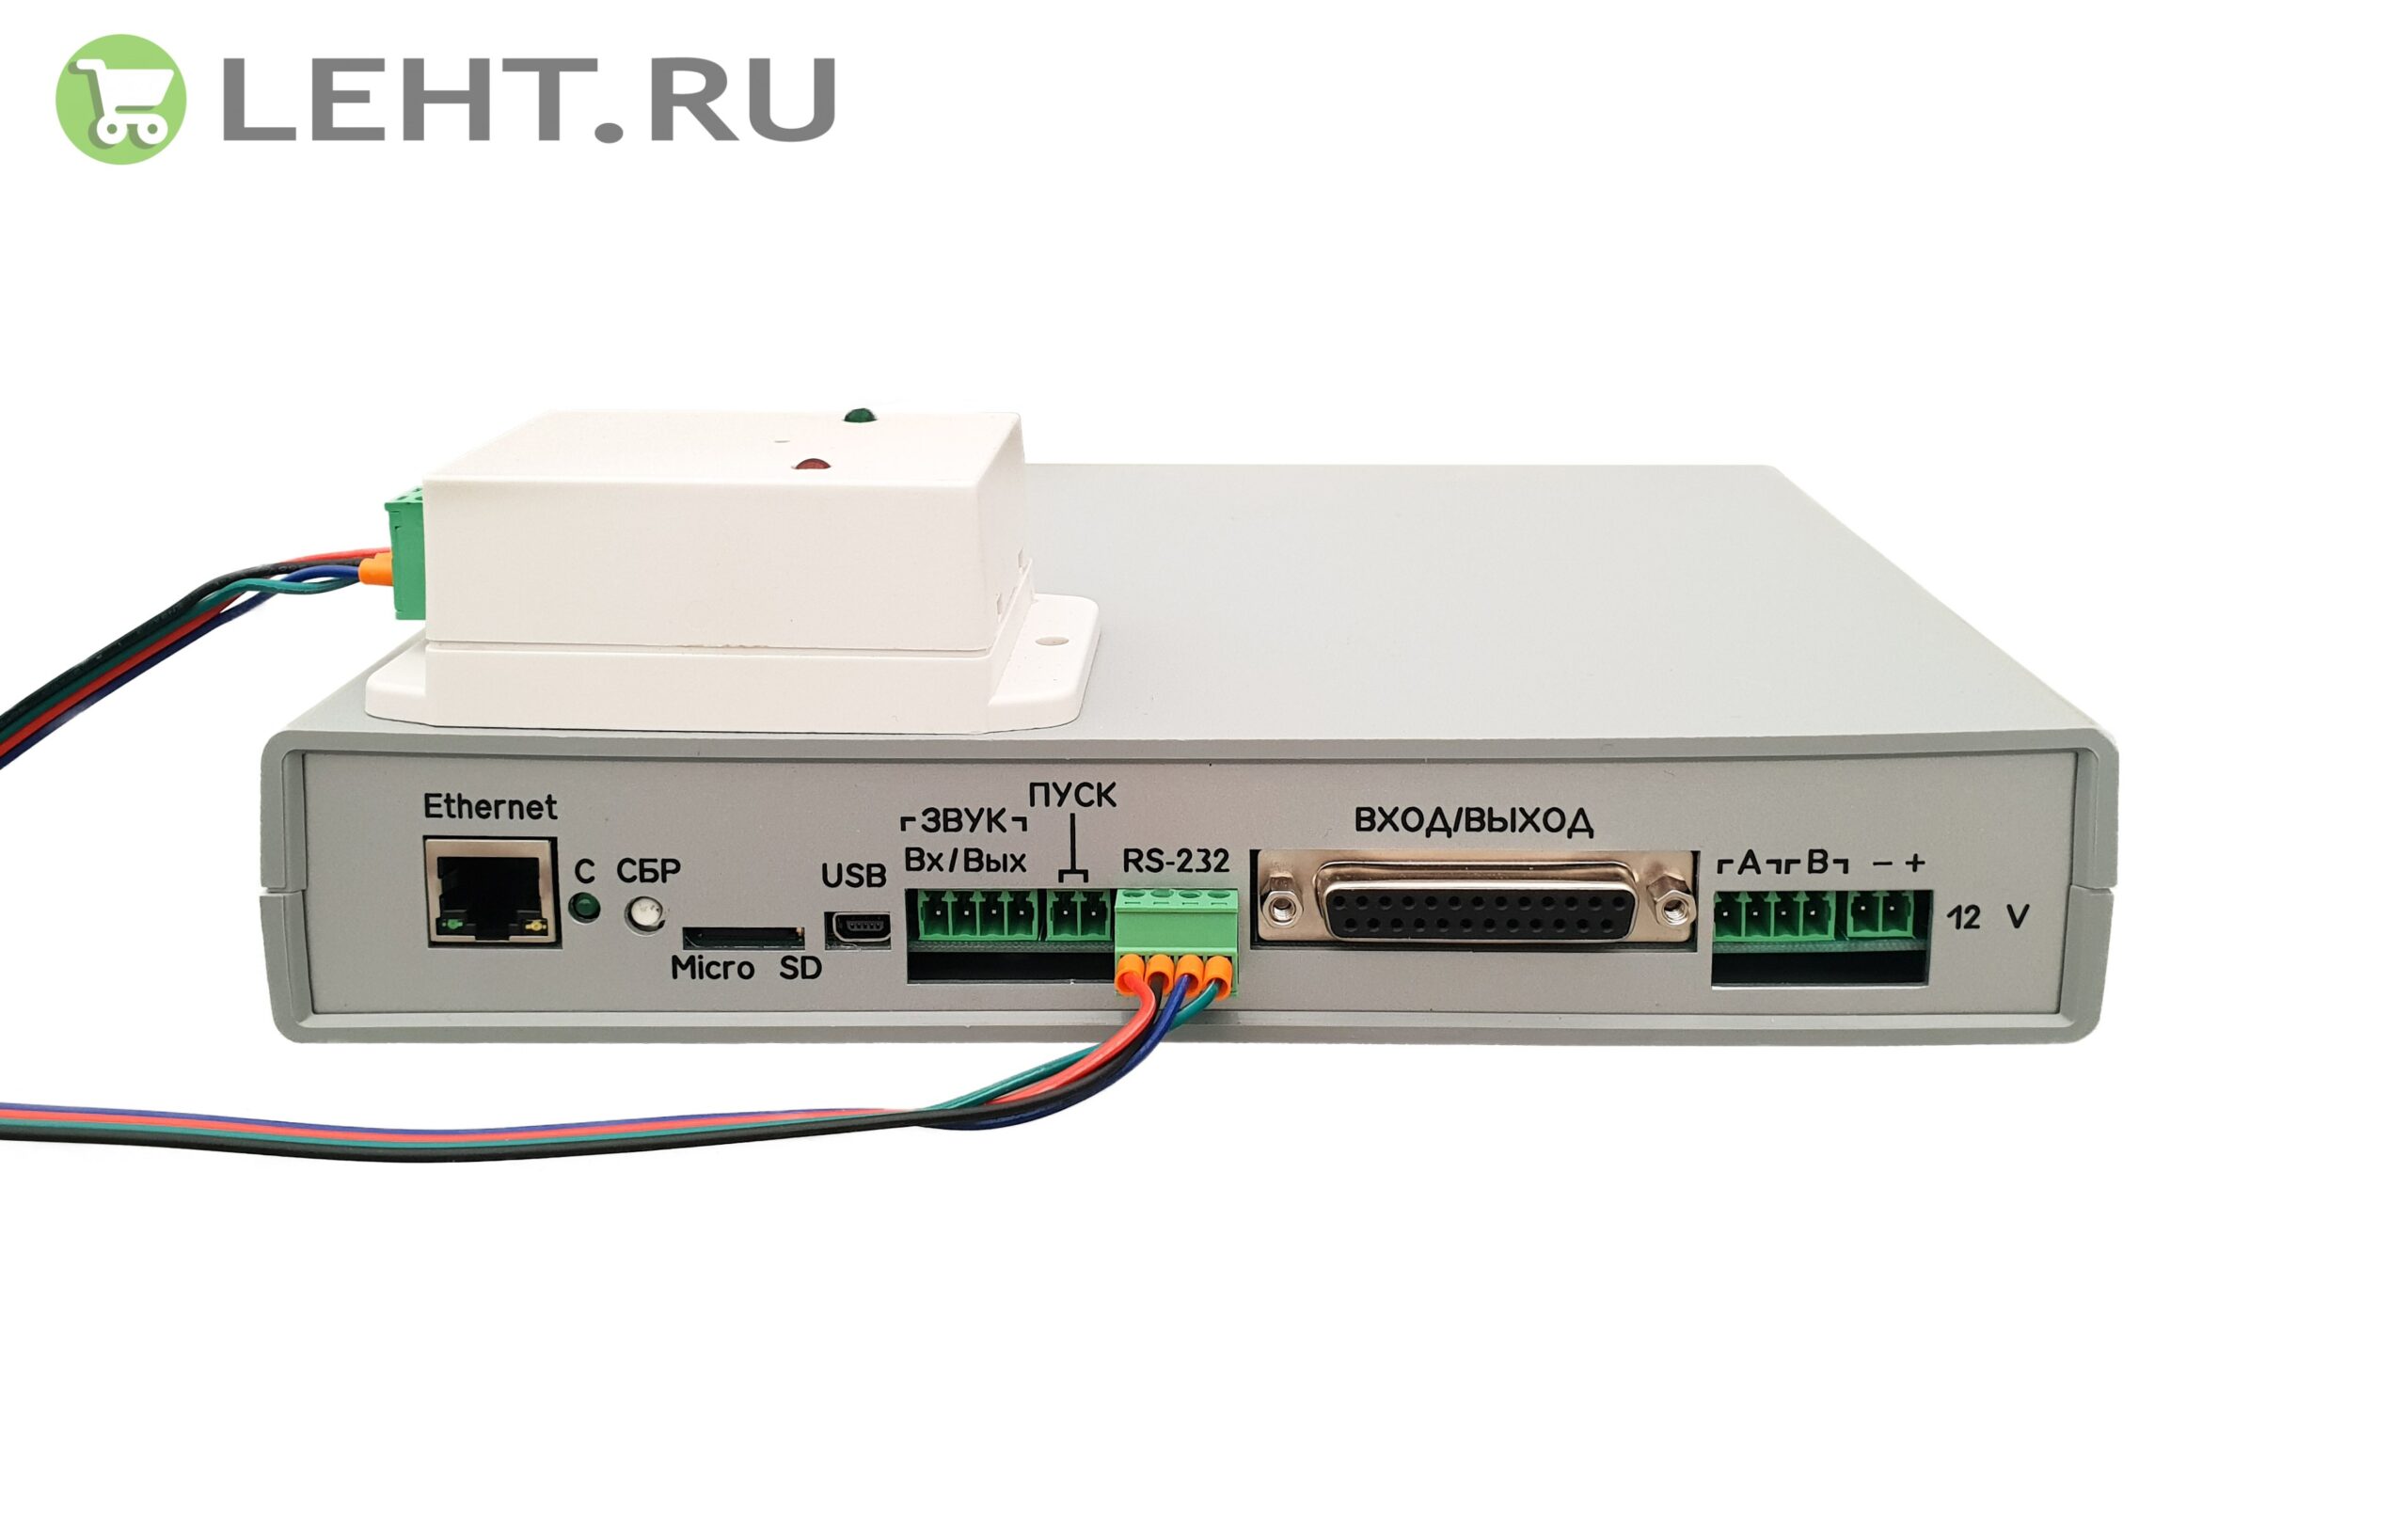 PIIR.RU – общероссийский поставщик специализированного промышленного оборудования